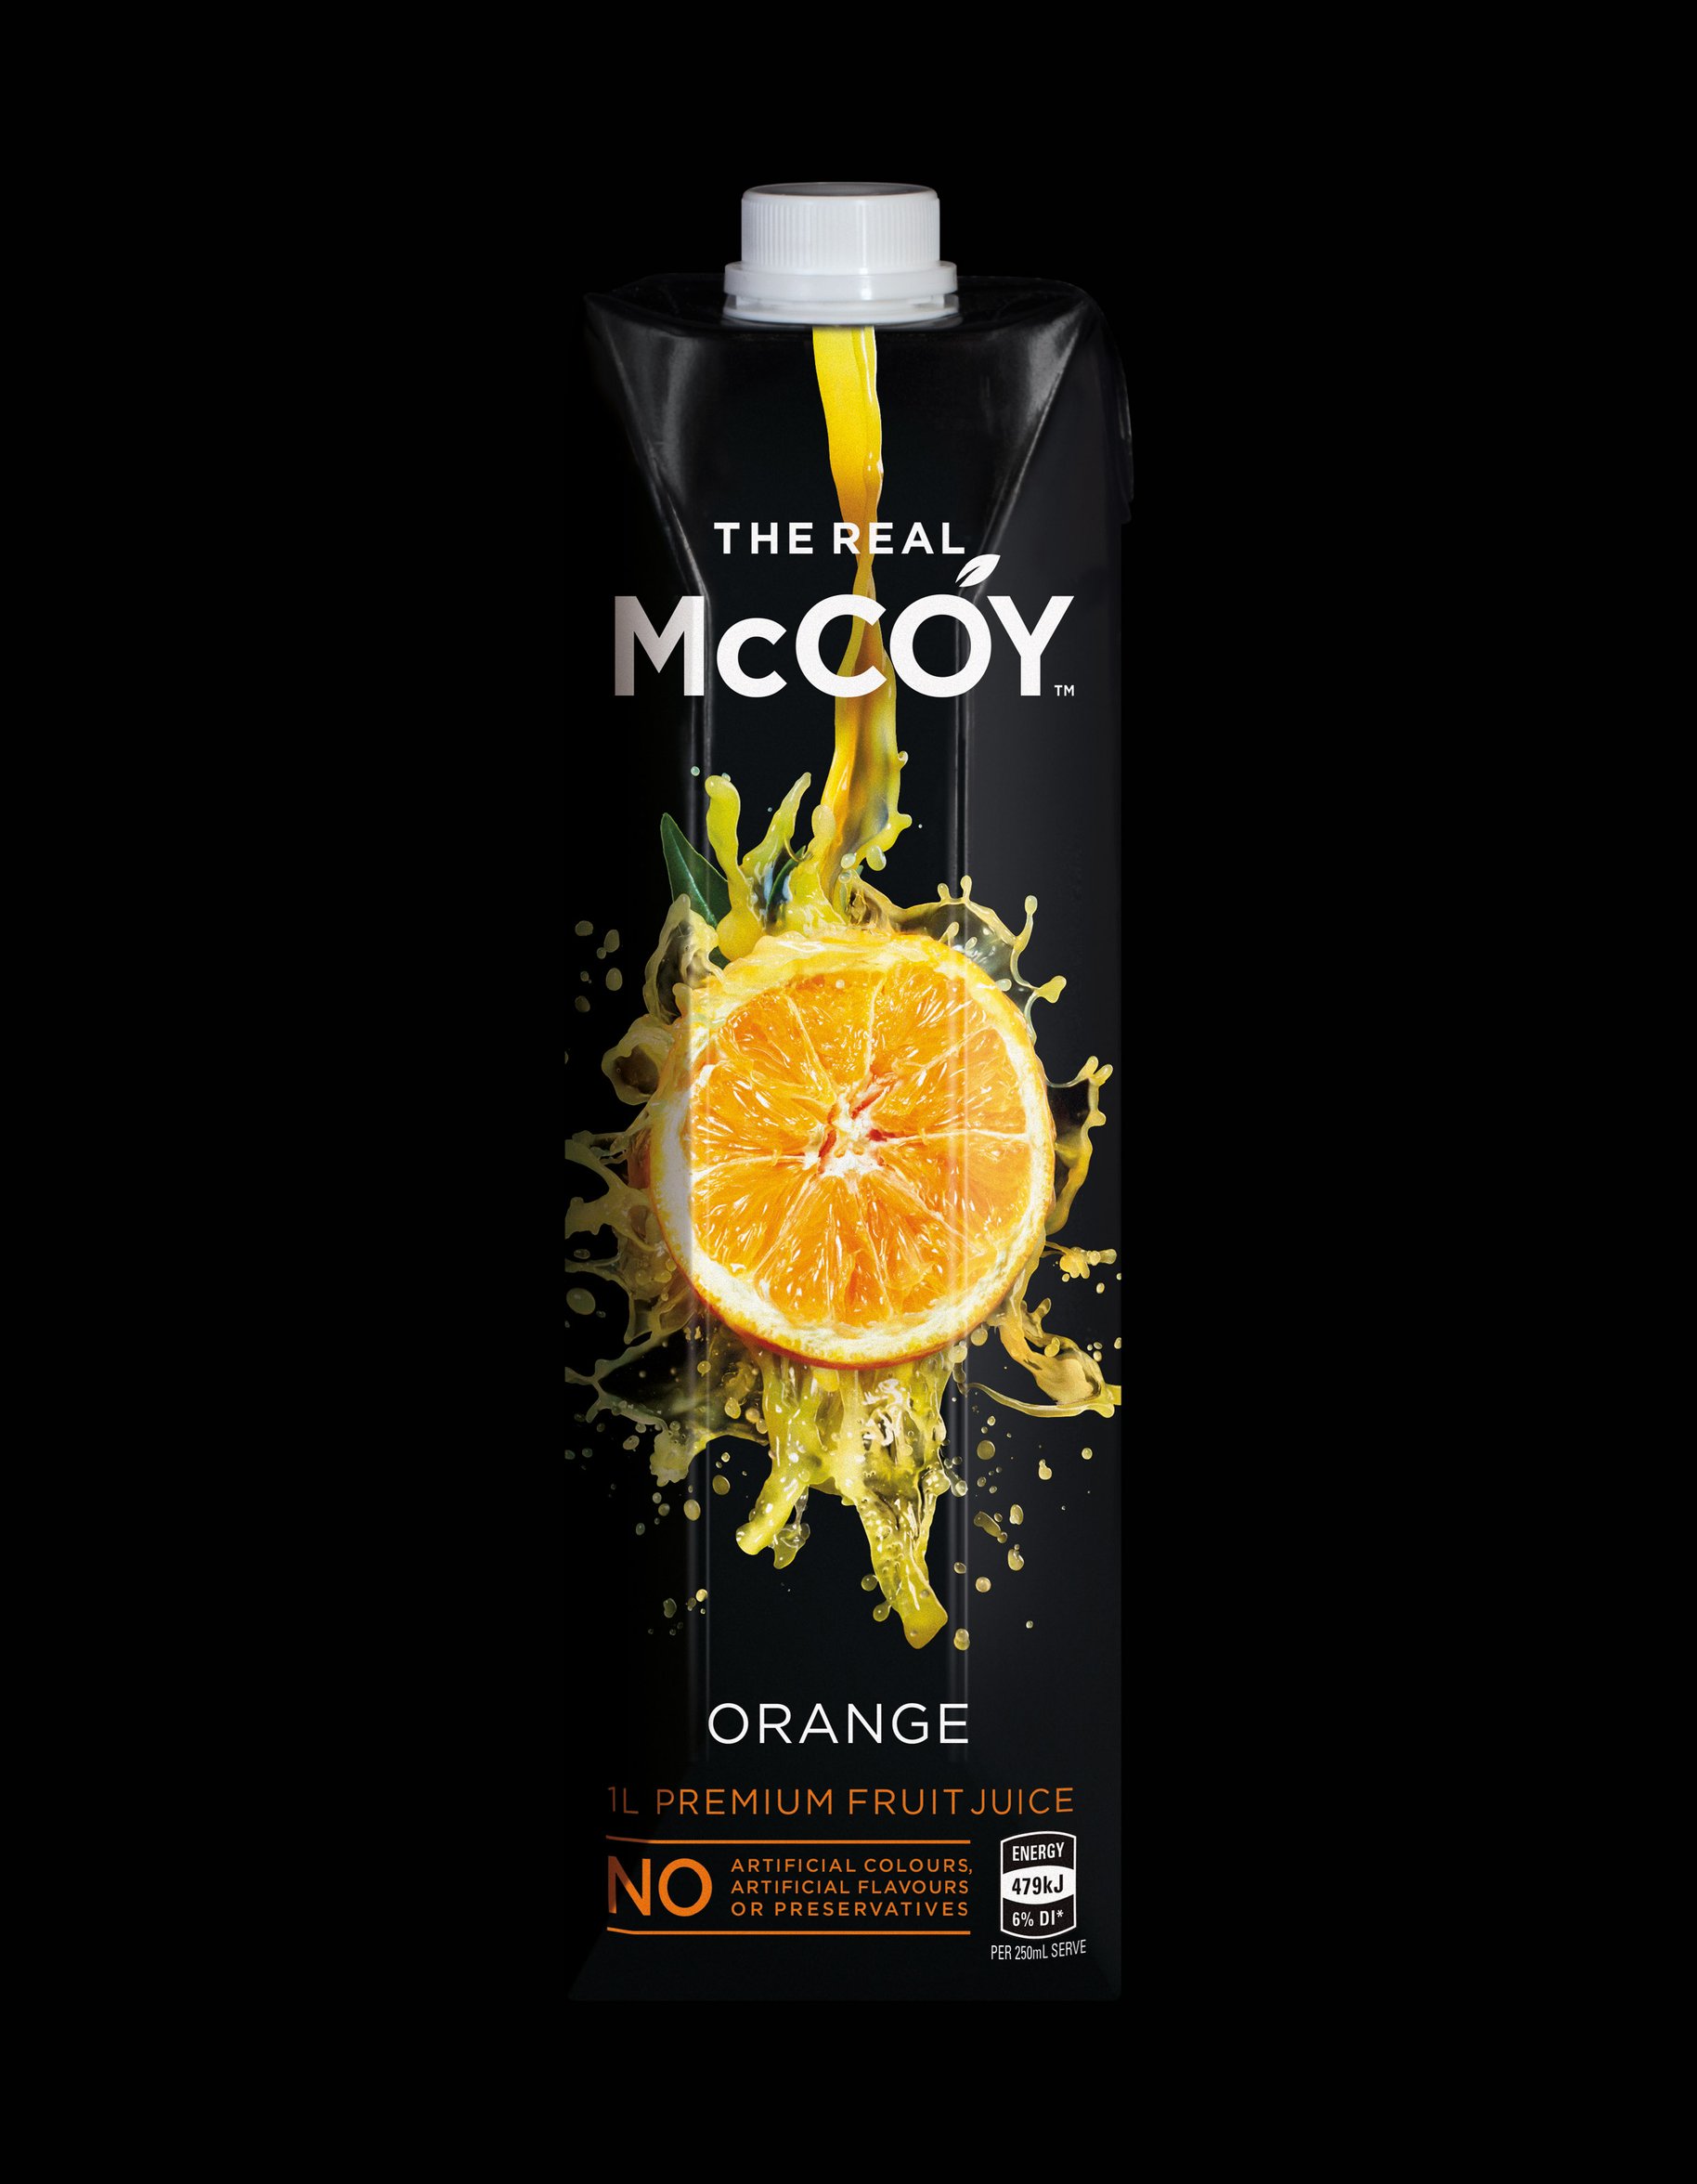 McCoy 1L tetra orange juice packaging